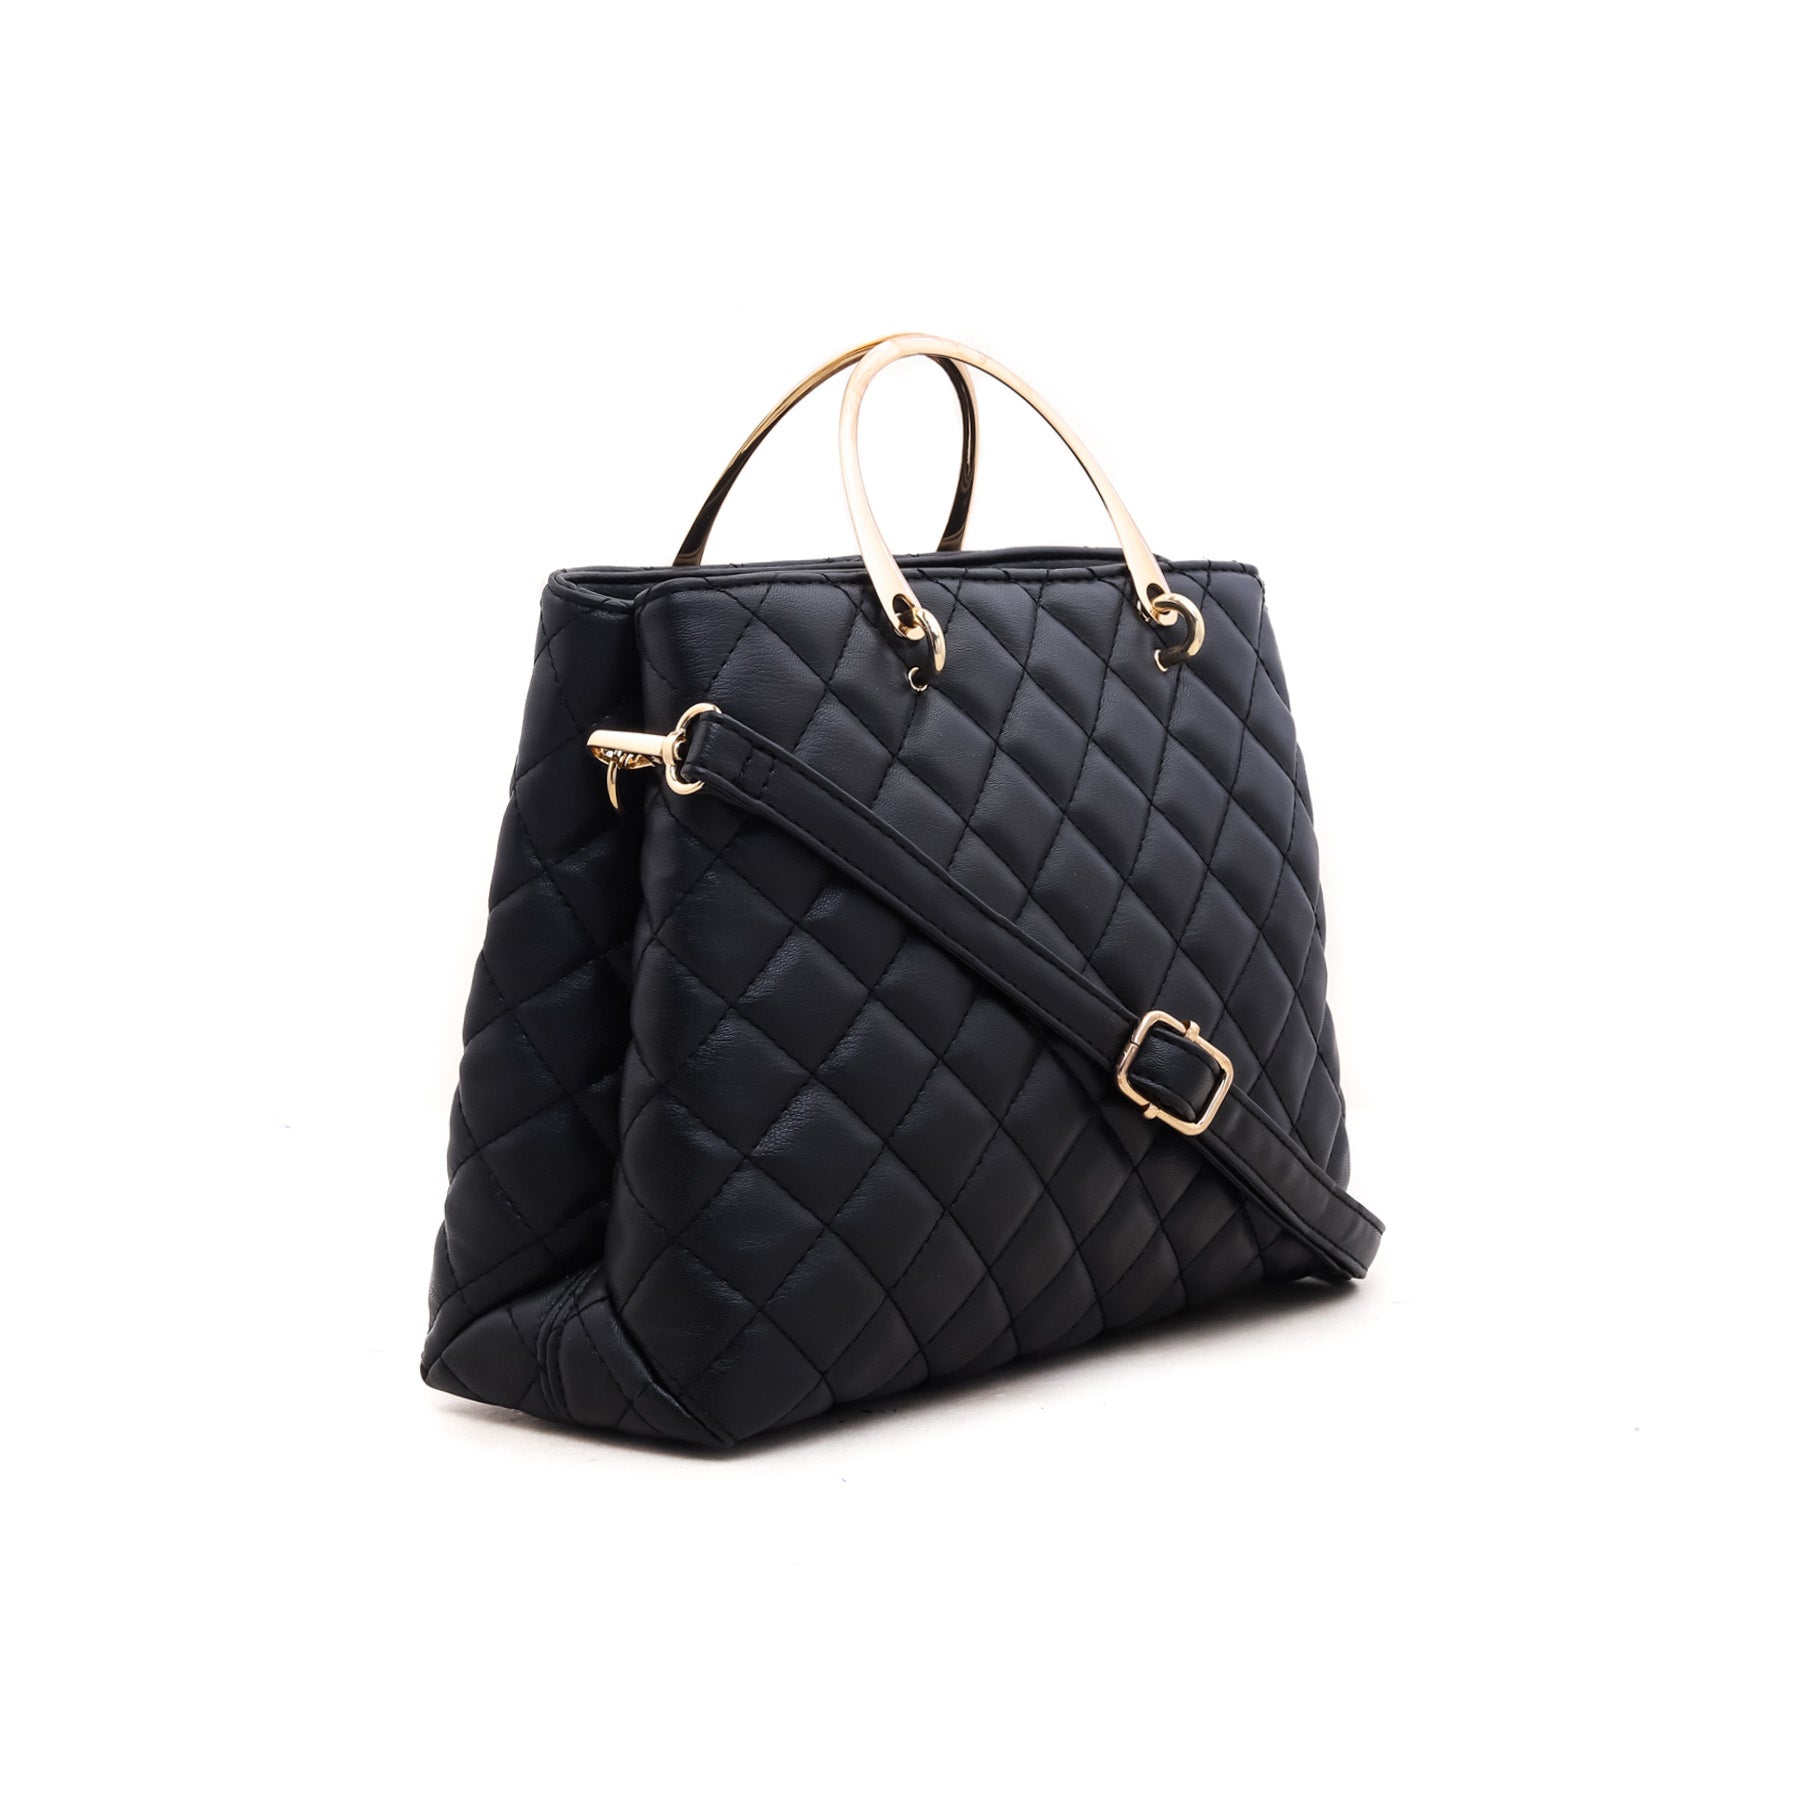 Black Formal Hand Bag P35021